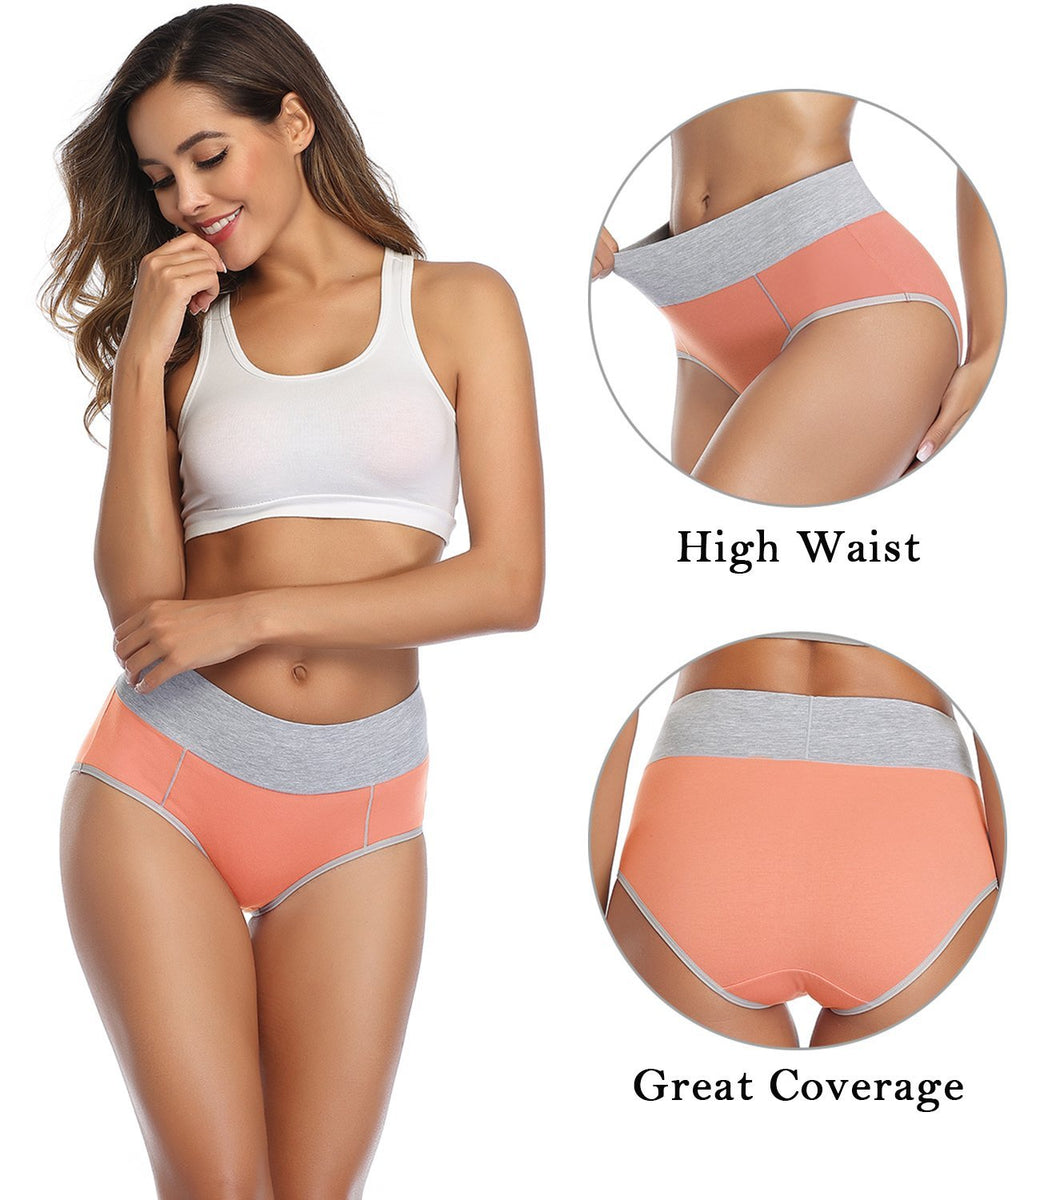 wirarpa Women’s High Waist Full Coverage Cotton Underwear 4 Pack